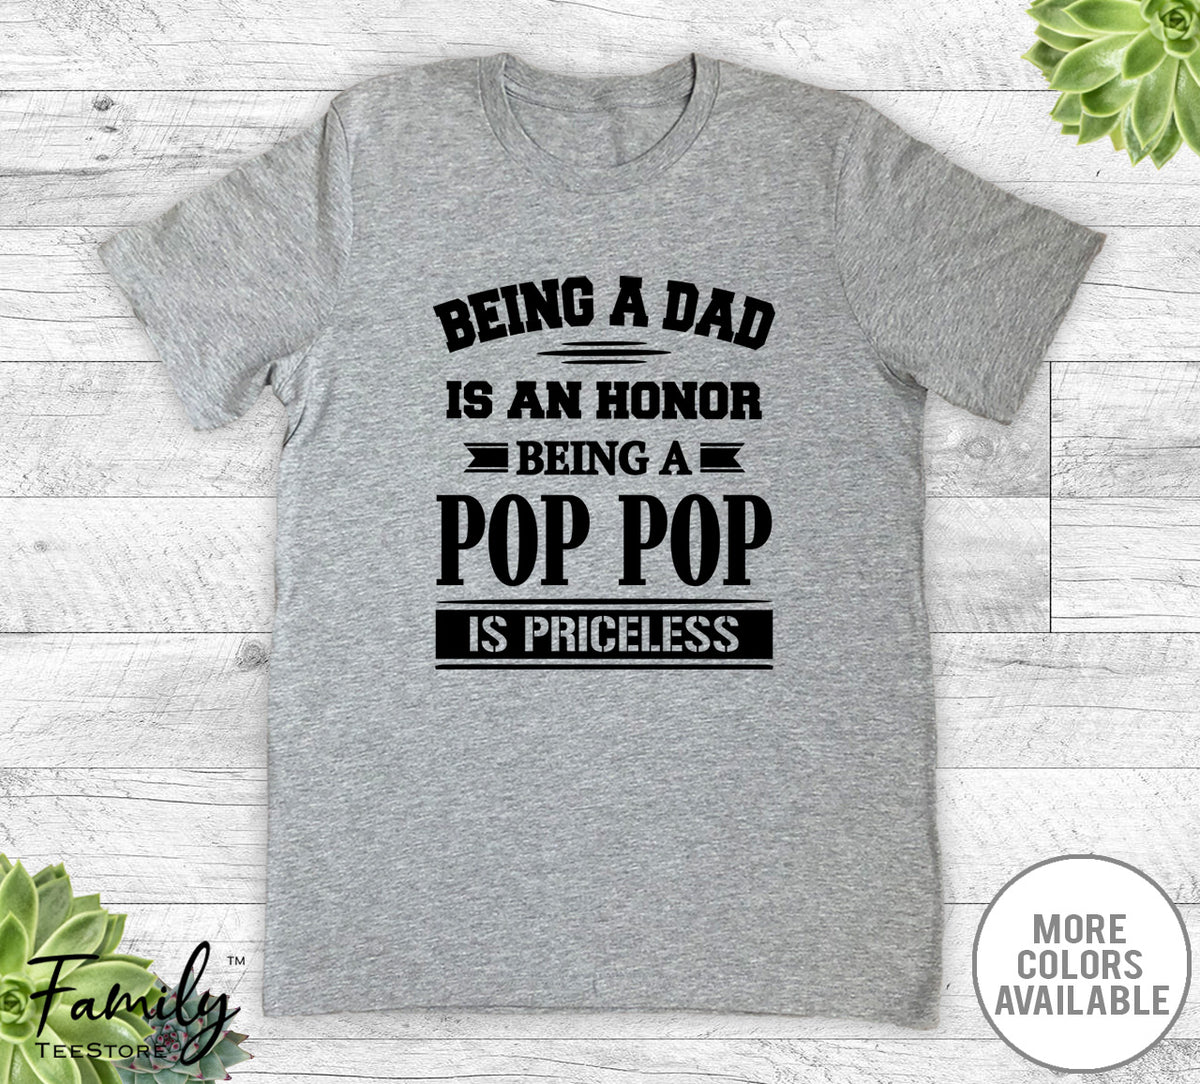 Being A Dad Is An Honor Being A Pop Pop Is Priceless - Unisex T-shirt - Pop Pop Shirt - Pop Pop Gift - familyteeprints